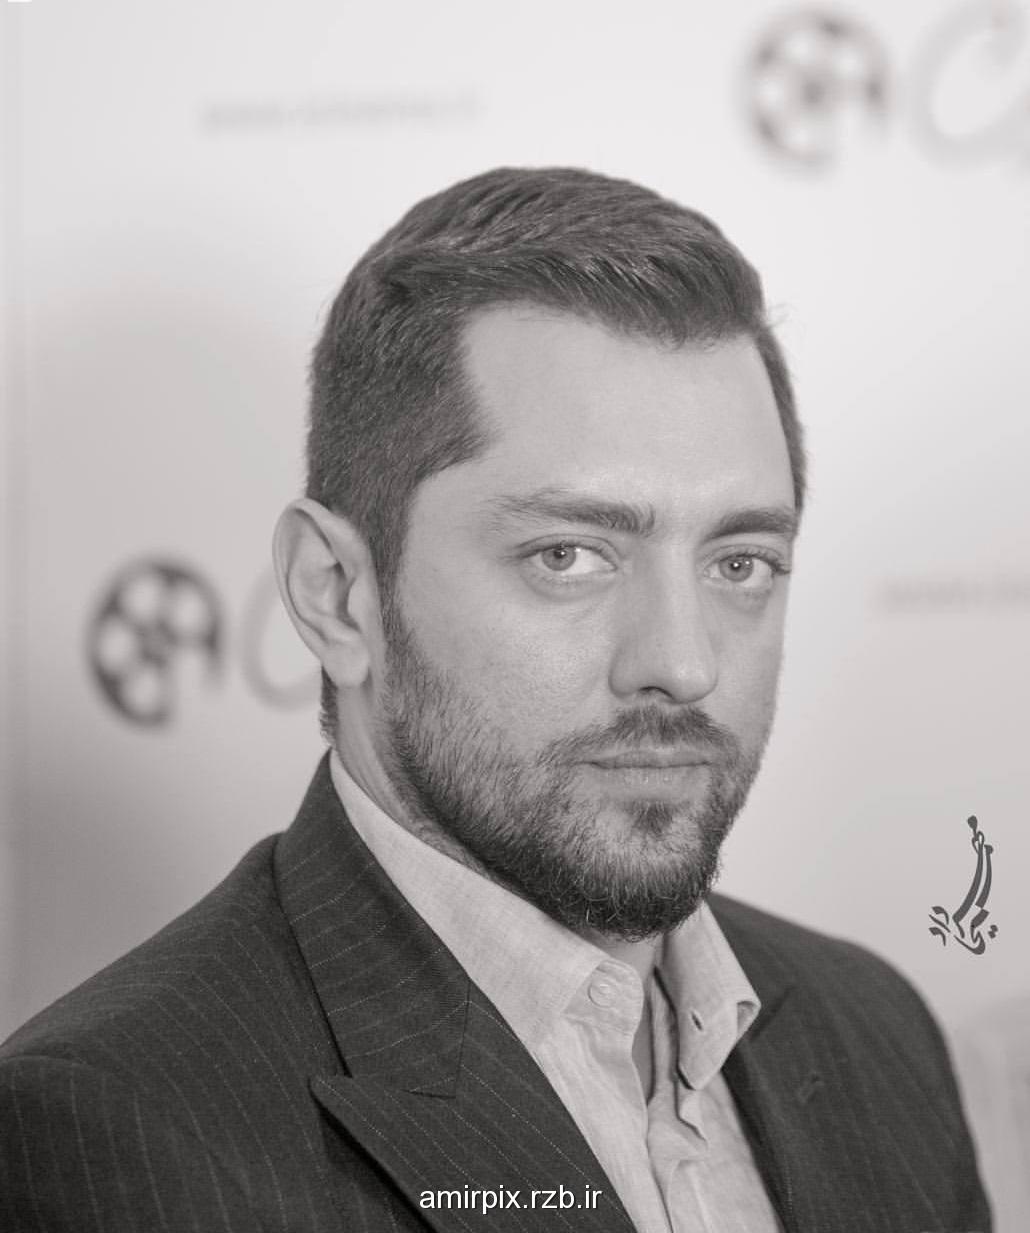 بهرام رادان در حاشیه سی و چهارمین جشنواره فیلم فجر